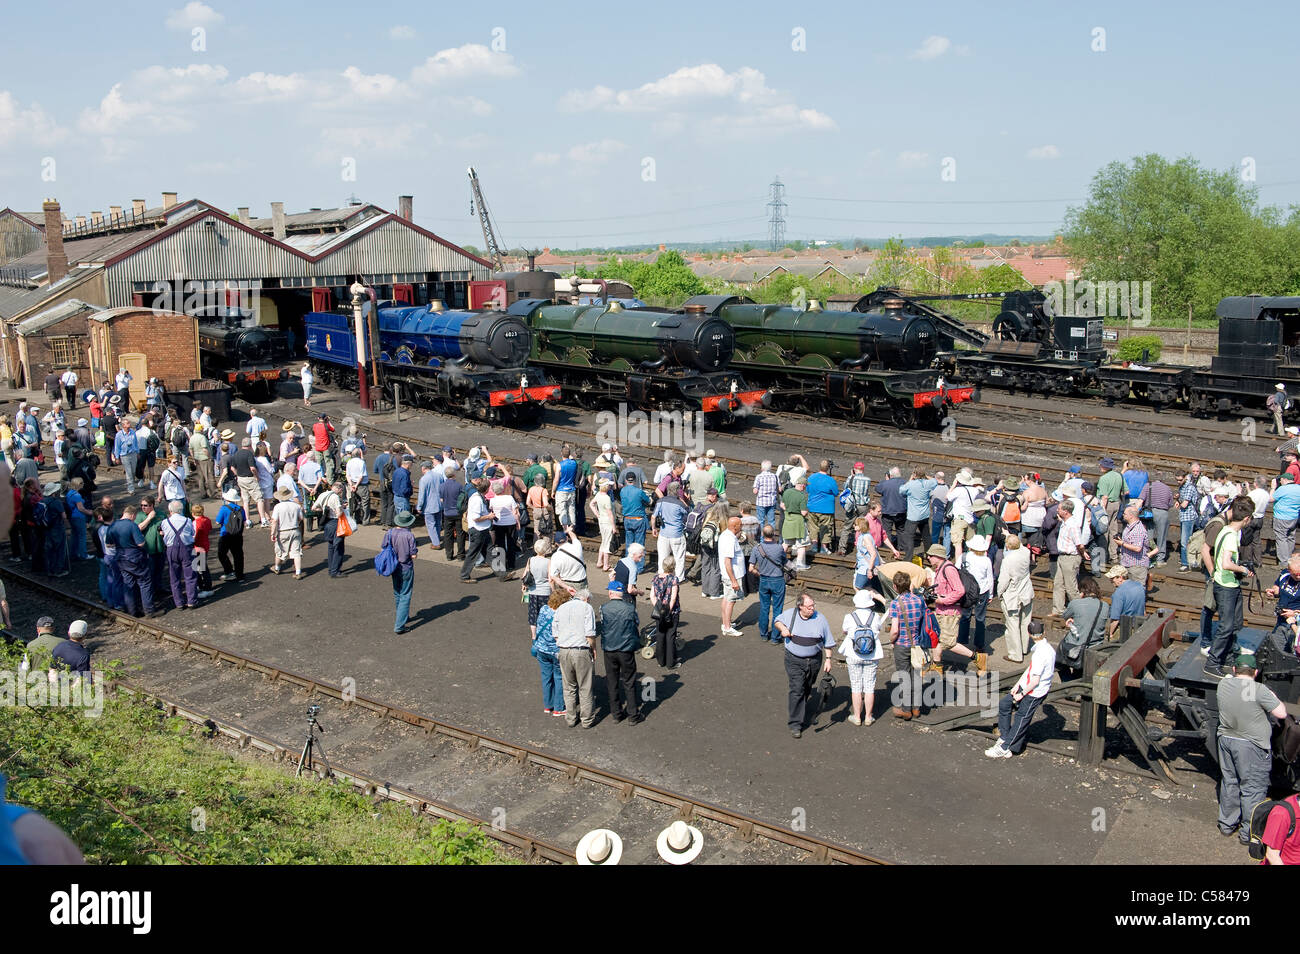 L'observation des adeptes des chemins de locomotives à vapeur à Didcot Railway Centre, Didcot, Oxfordshire, UK Banque D'Images